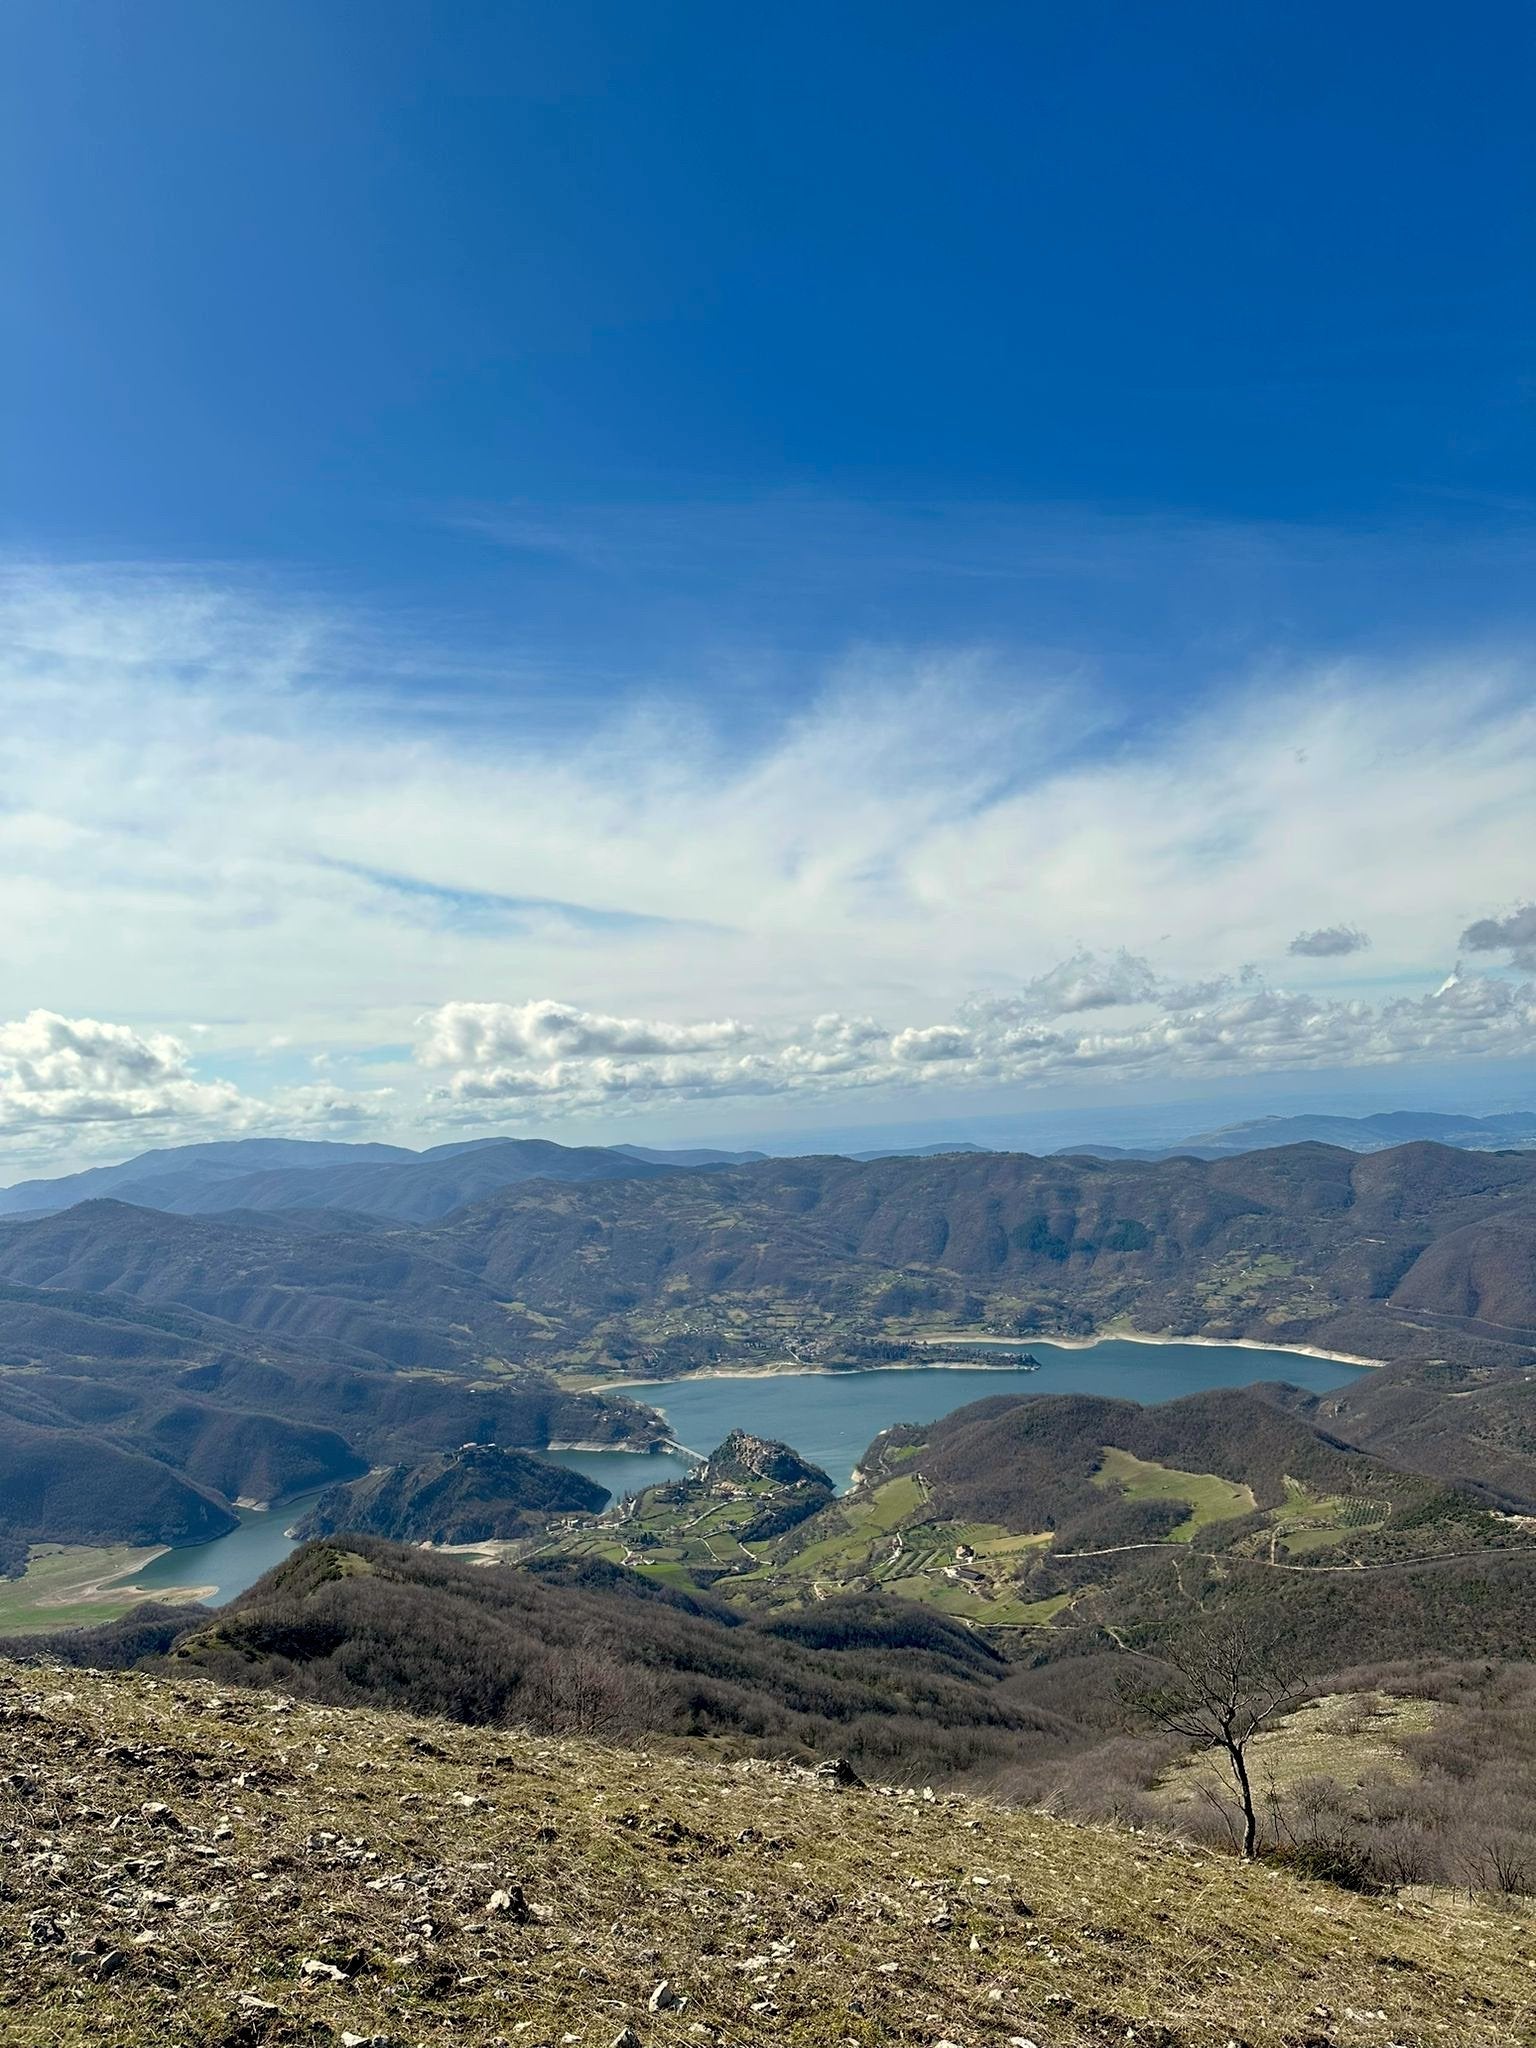 In arrivo: Trekking sul Monte Navegna, la terrazza sui due laghi - Discover Experience